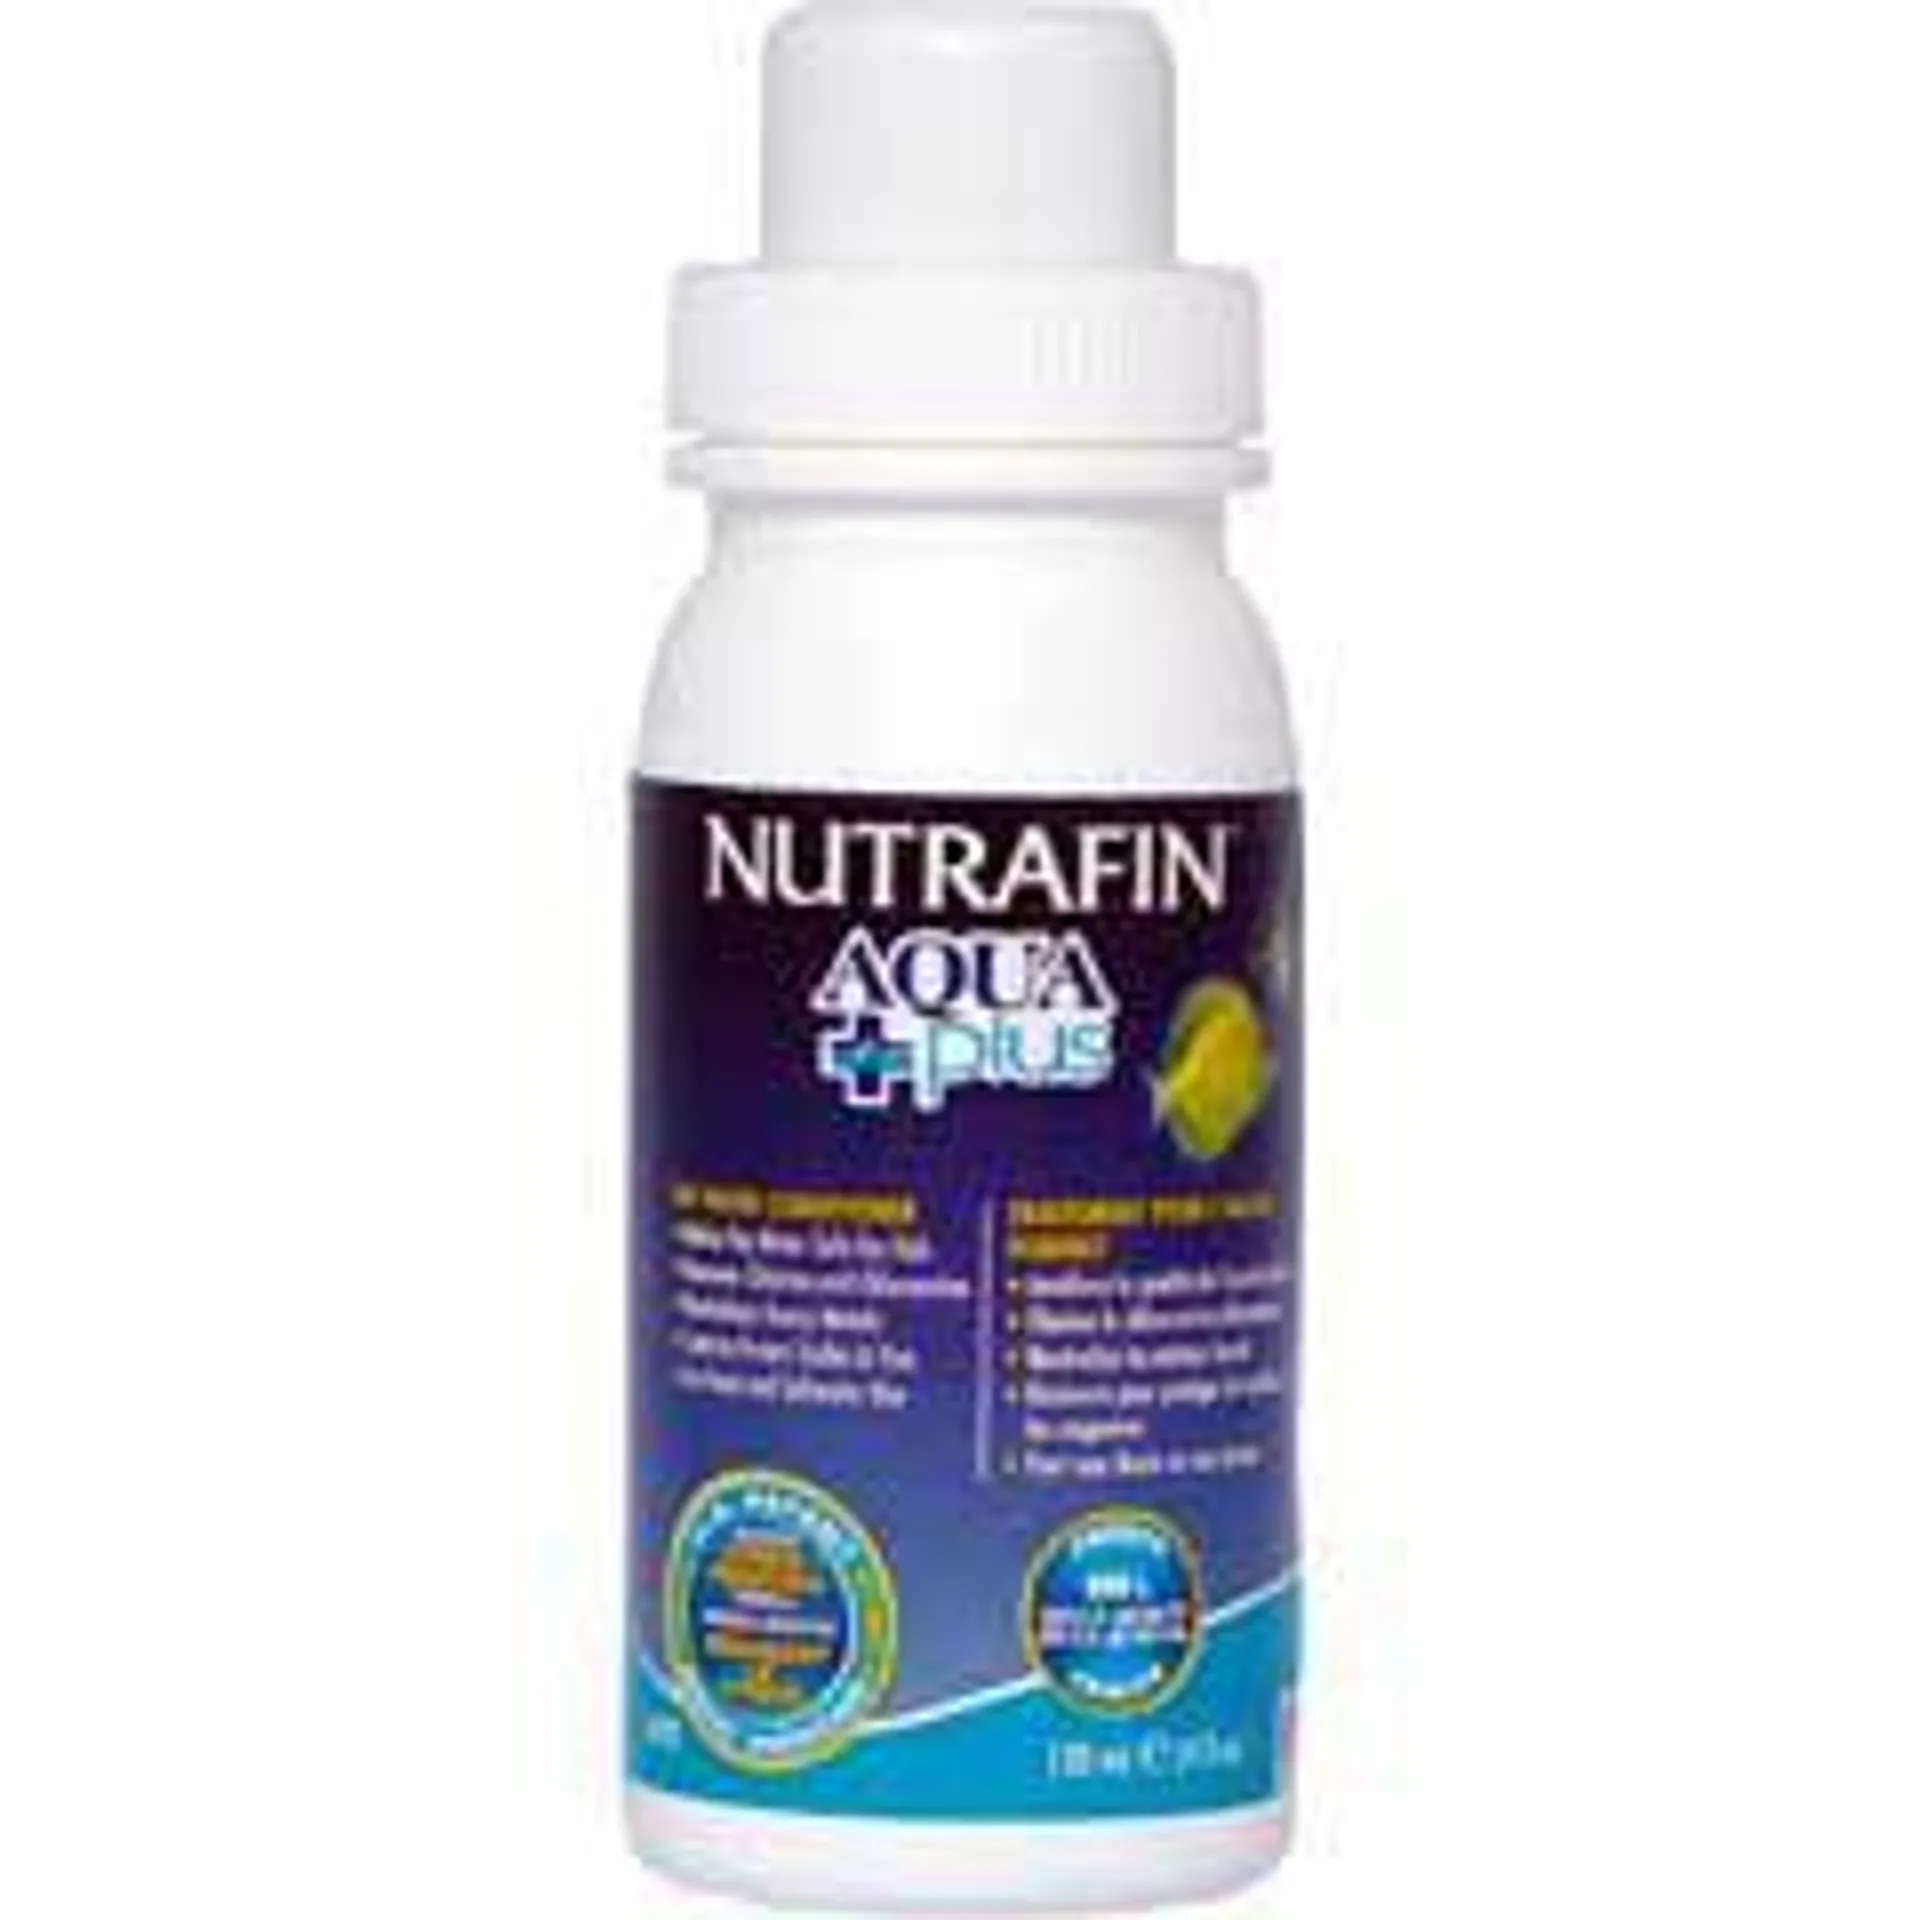 NUTRAFIN AQUA PLUS ANTICLORO 30 ML